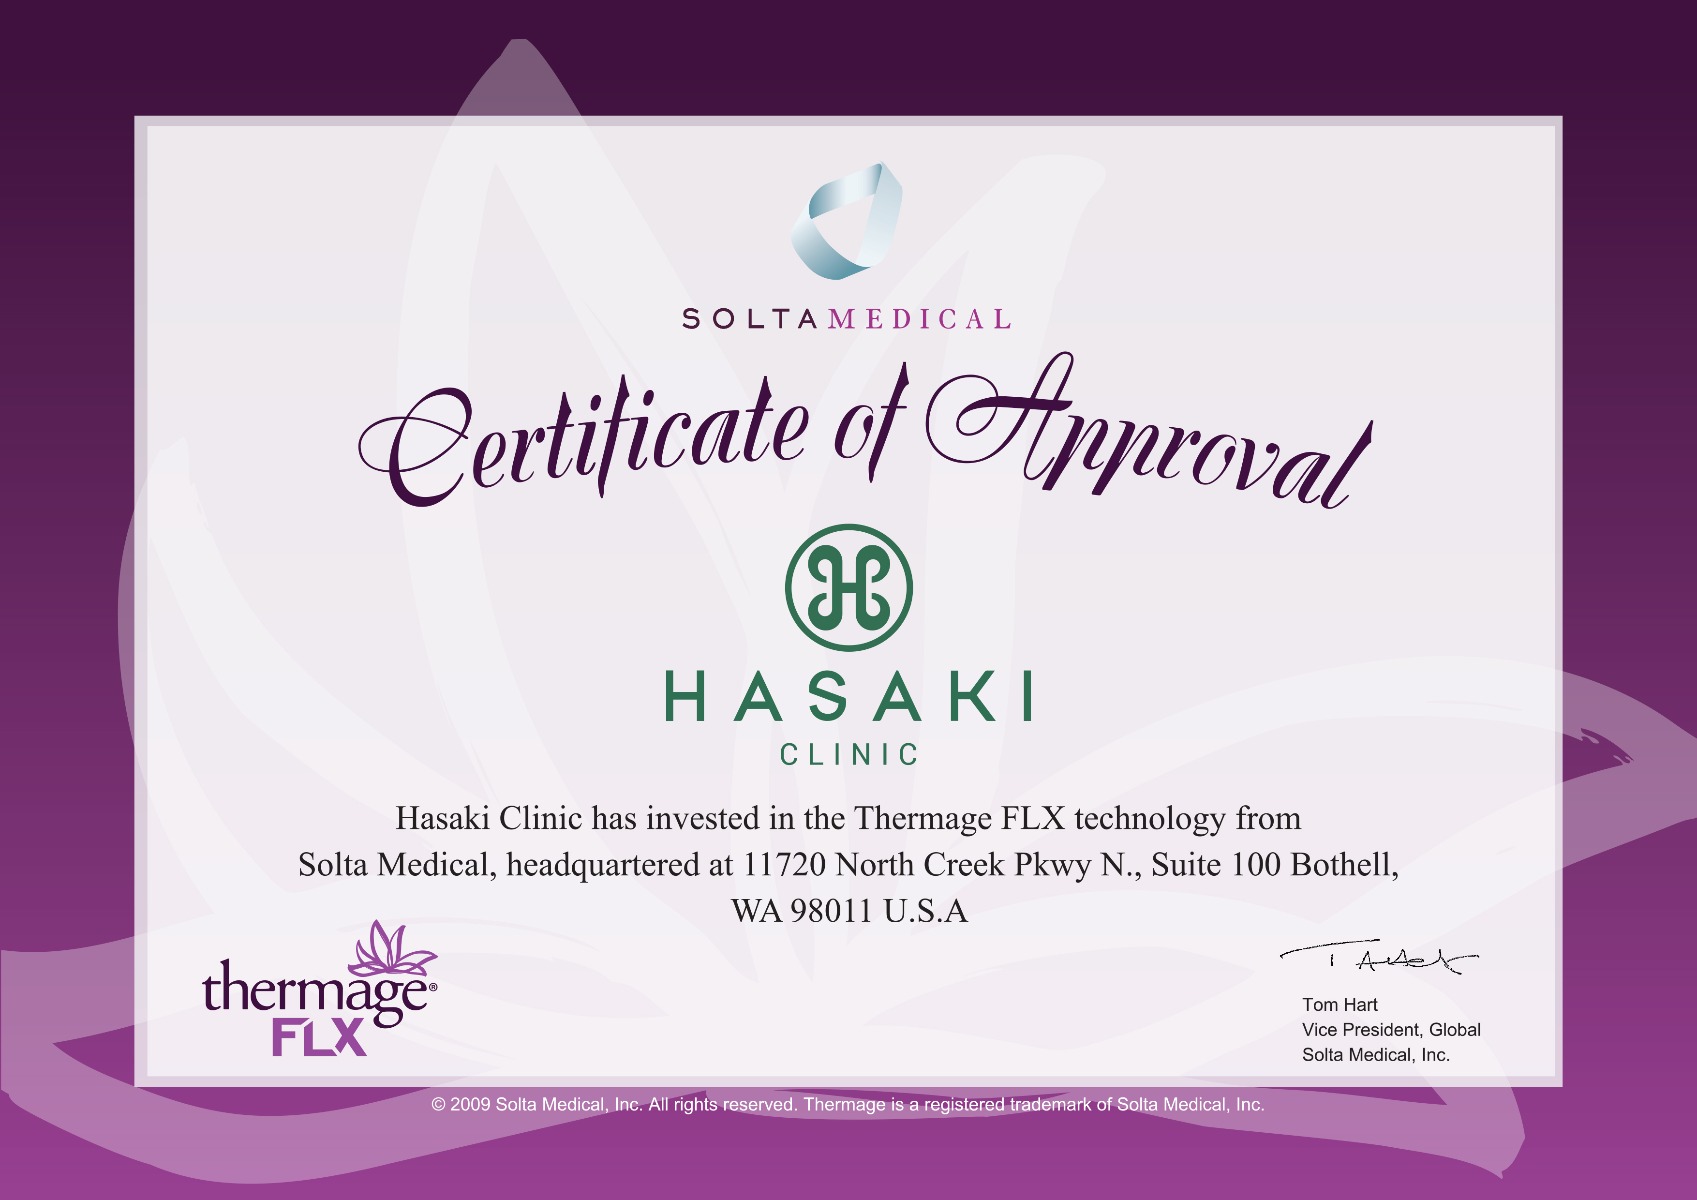 Hasaki Clinic cam kết sử dụng công nghệ Thermage FLX chính hãng